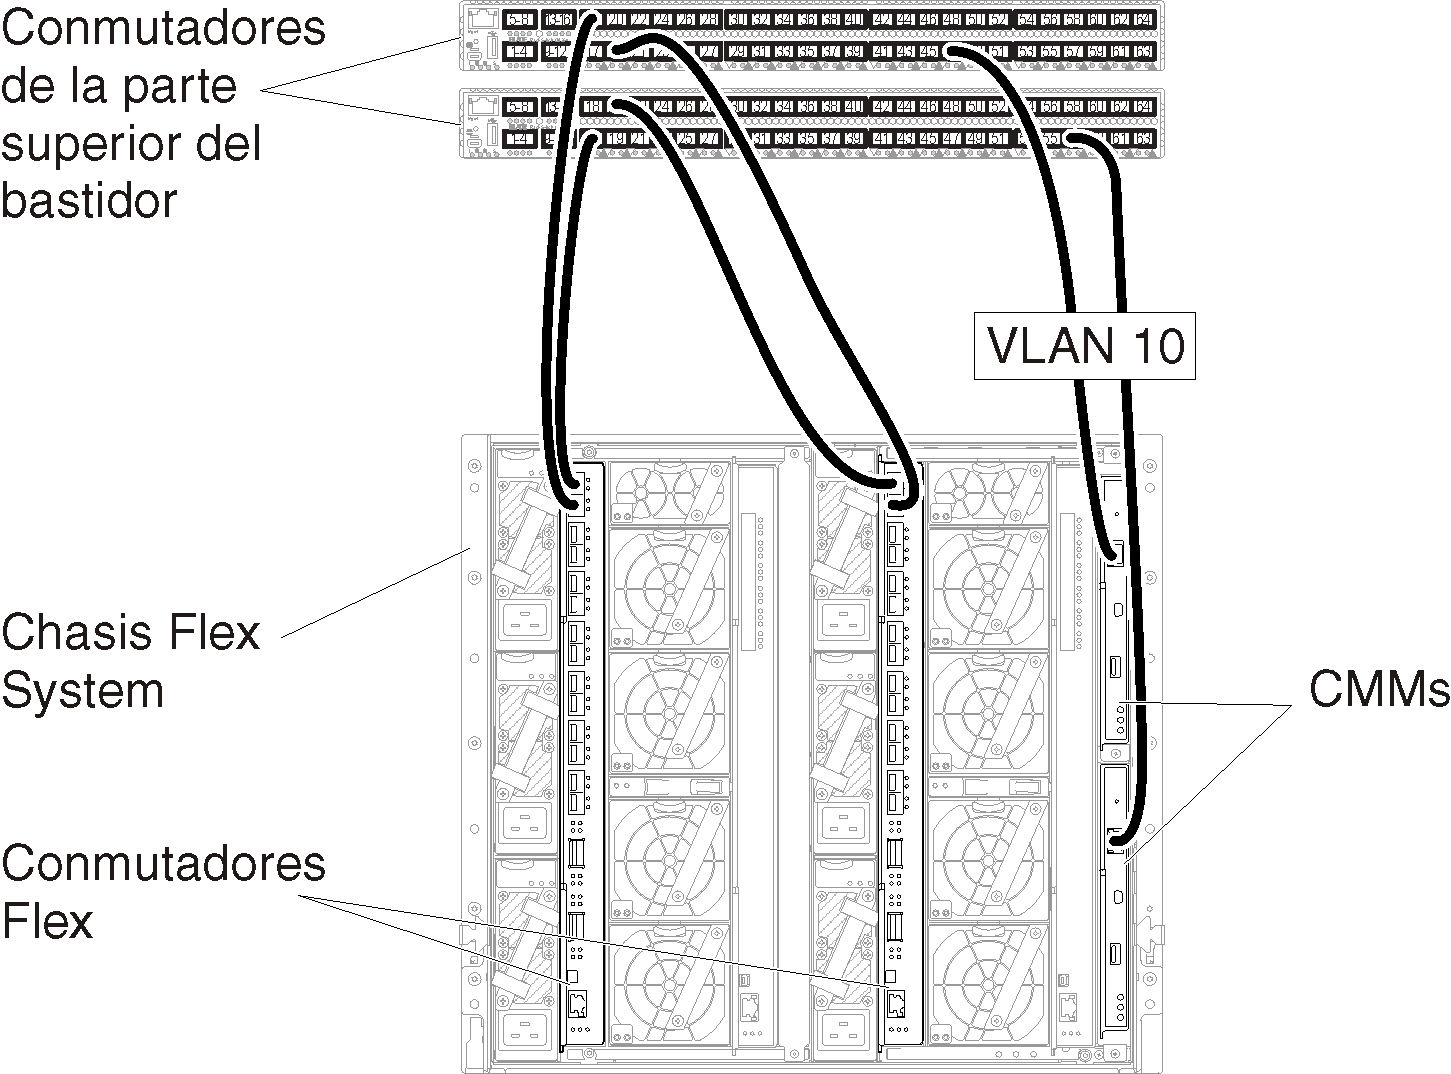 Ilustra la configuración del etiquetado de VLAN solo en la red de gestión